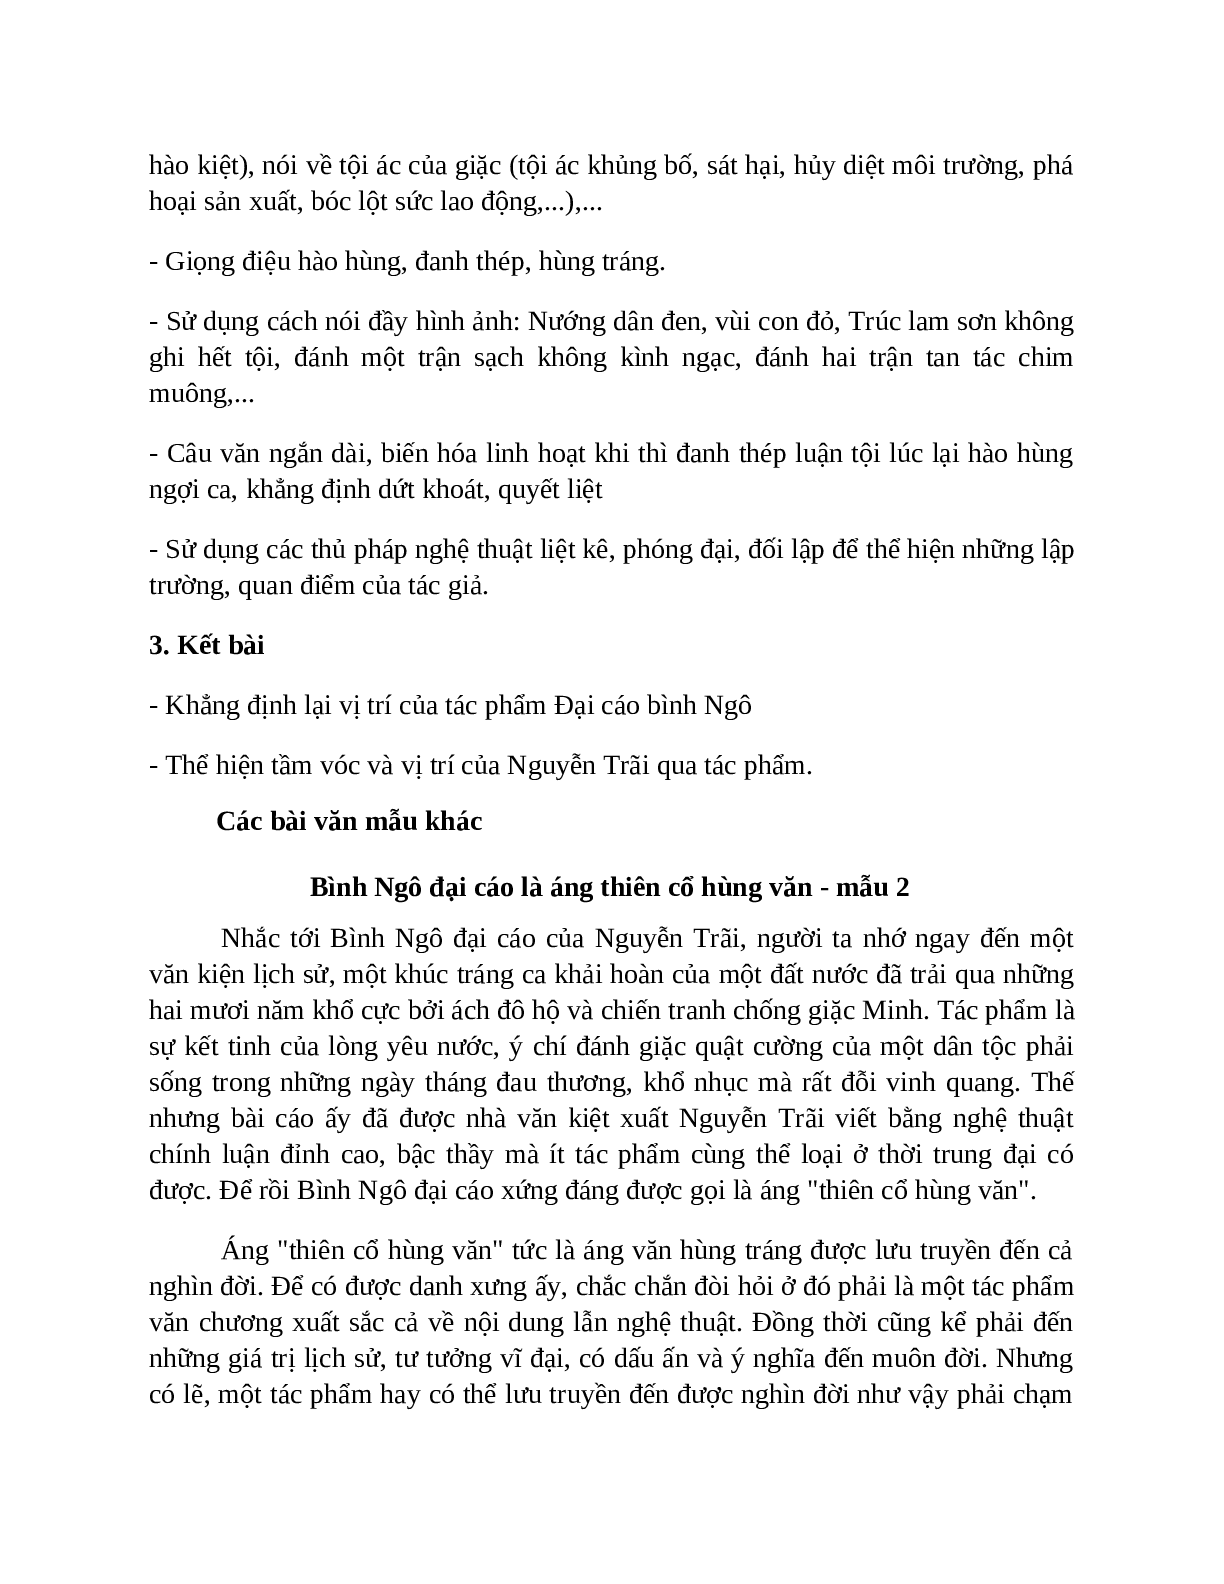 TOP 6 bài Chứng minh Bình Ngô đại cáo là áng thiên cổ hùng văn SIÊU HAY (trang 7)